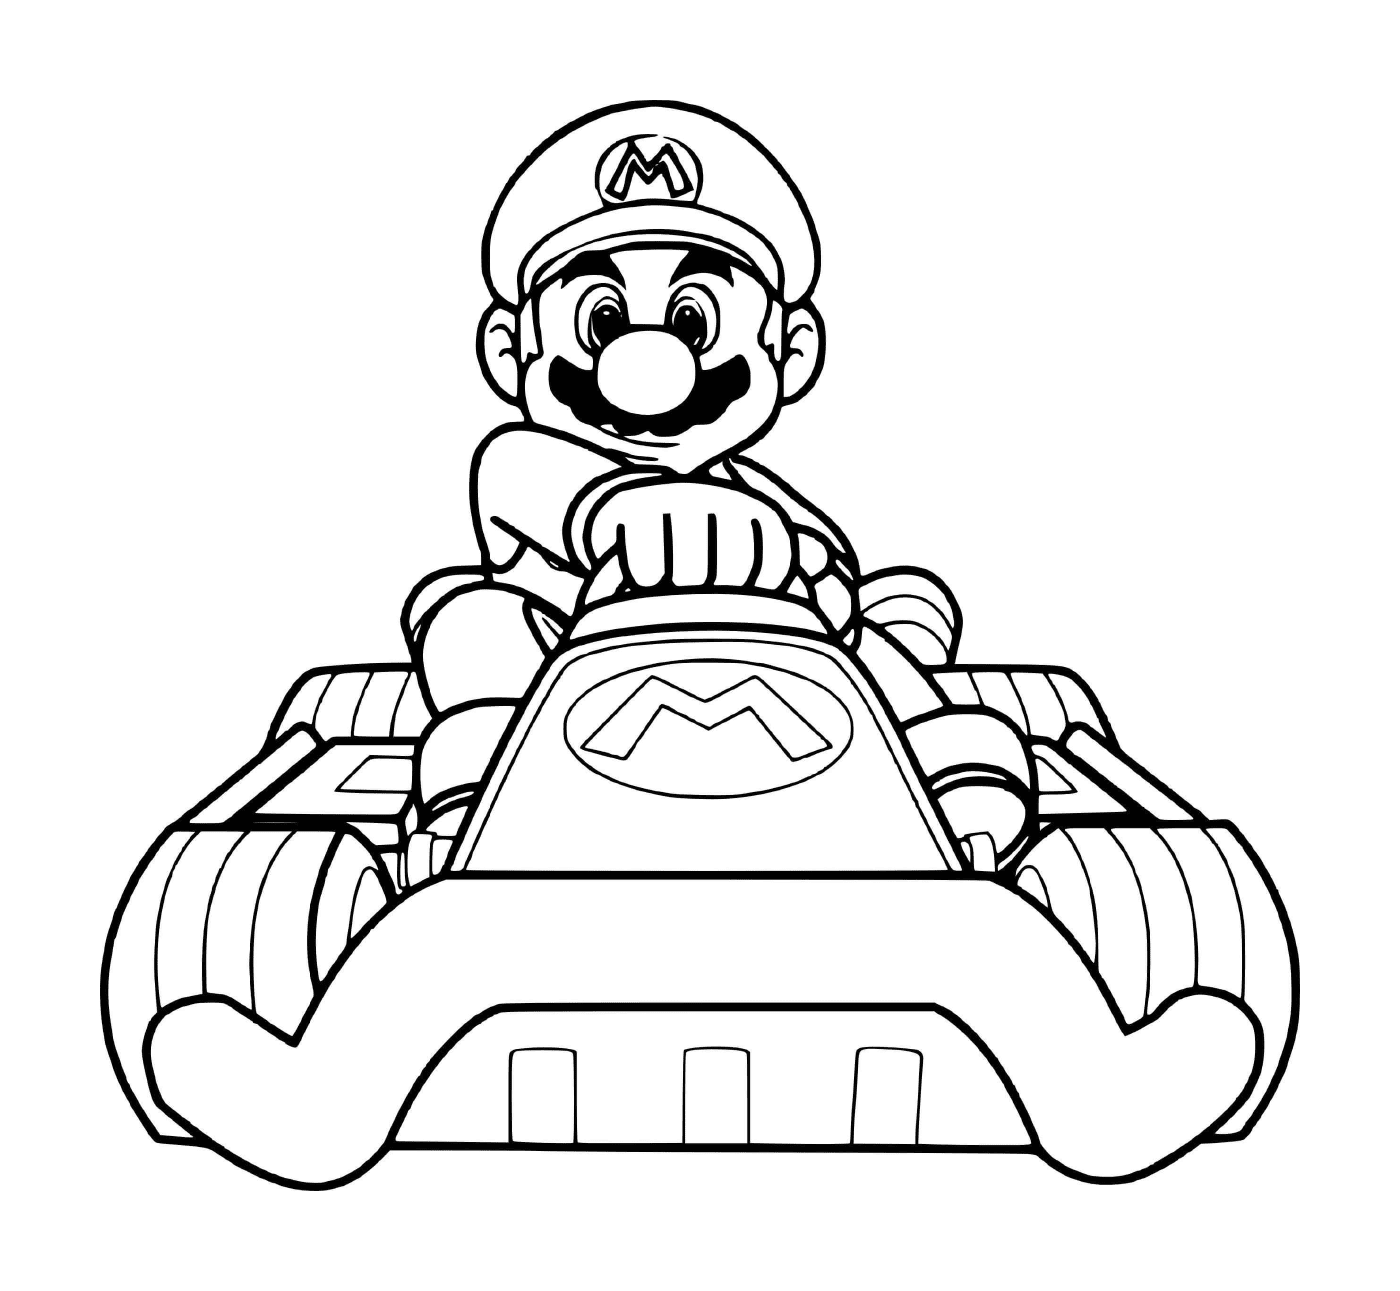   Mario prêt pour la course de voitures de sport 